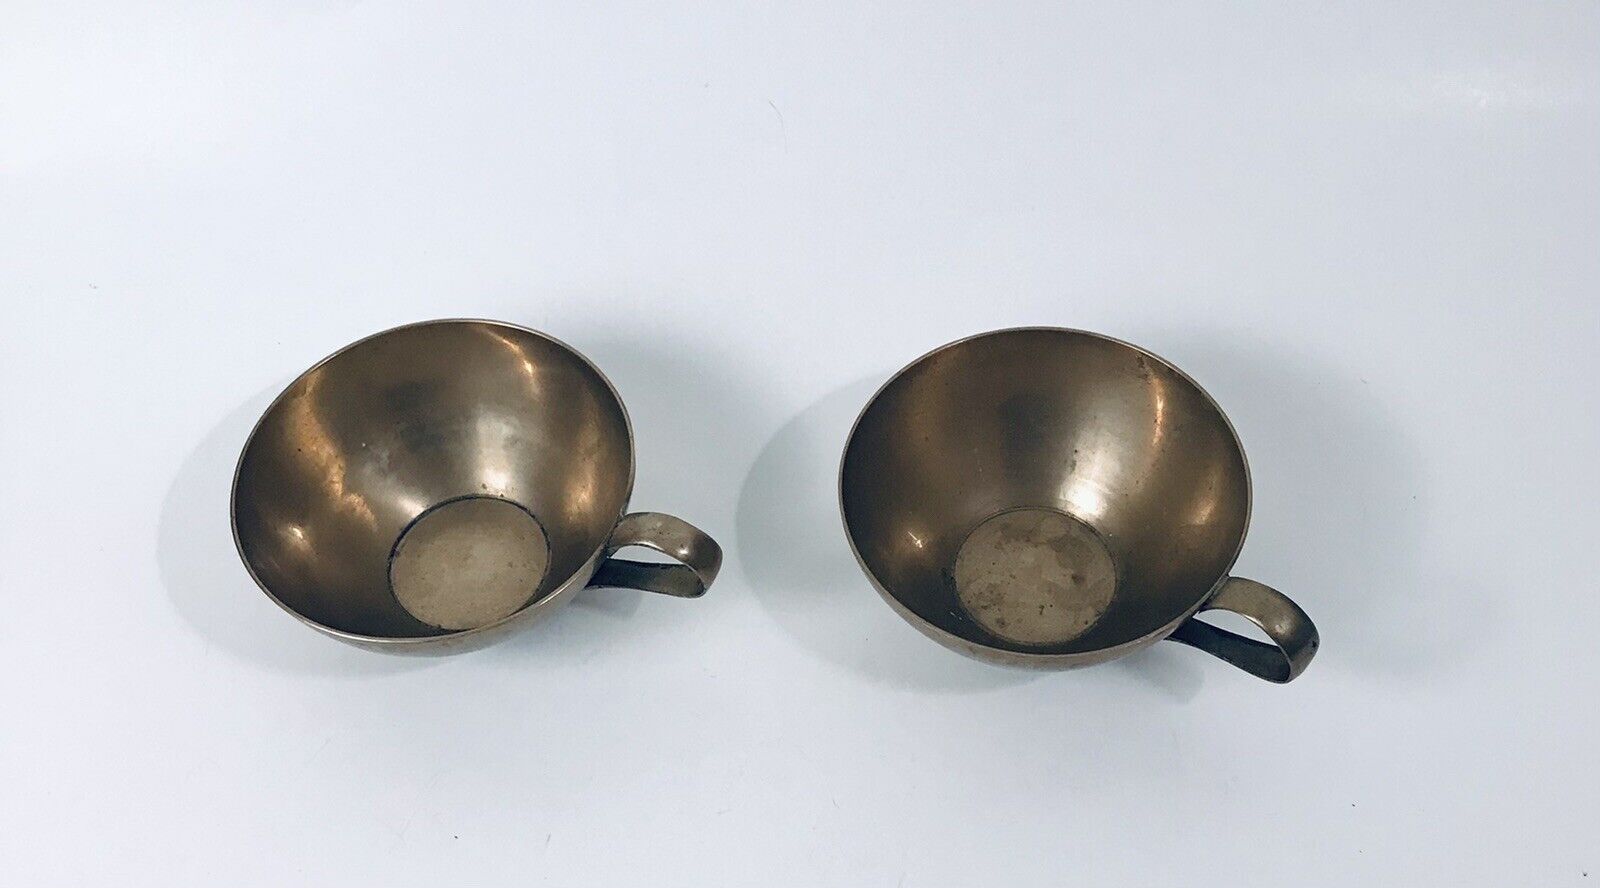 Vintage Brass Tea Cups D handle decorative heavy metal golden bronzed lot of 2